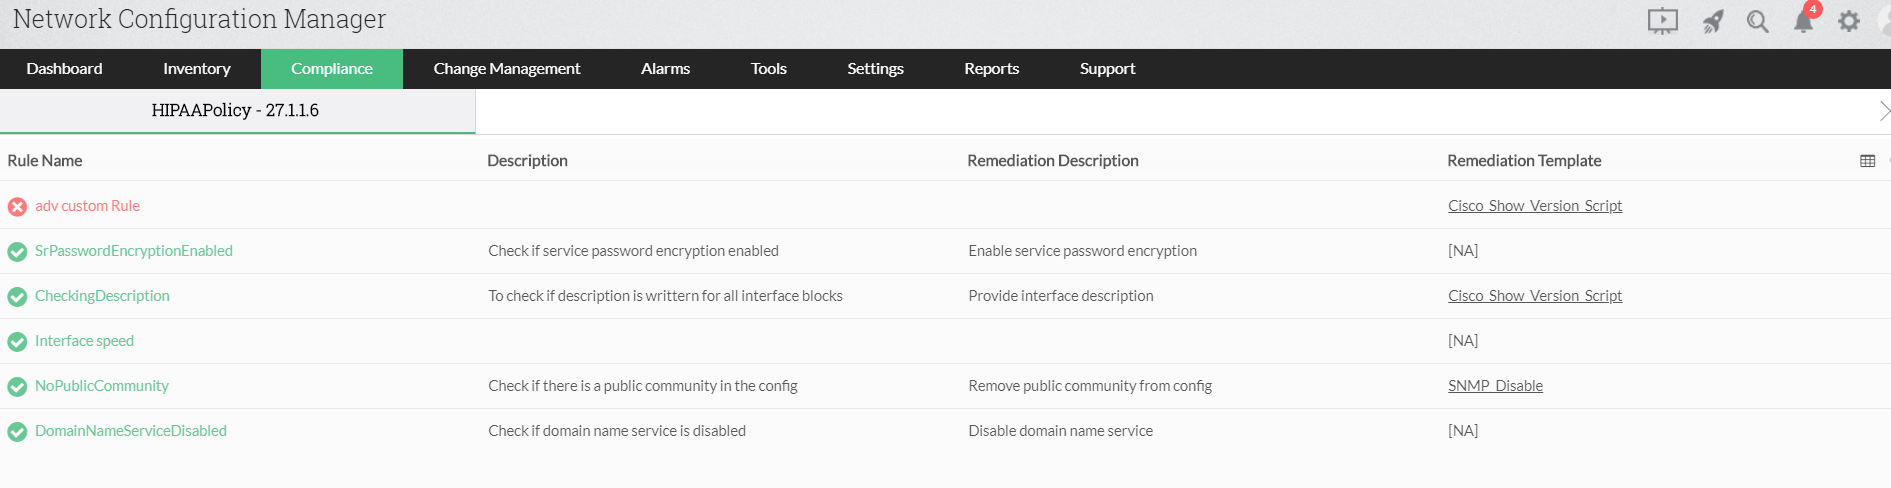 Dashboard de violaciones de informes de cumplimiento con Network Configuration Manager